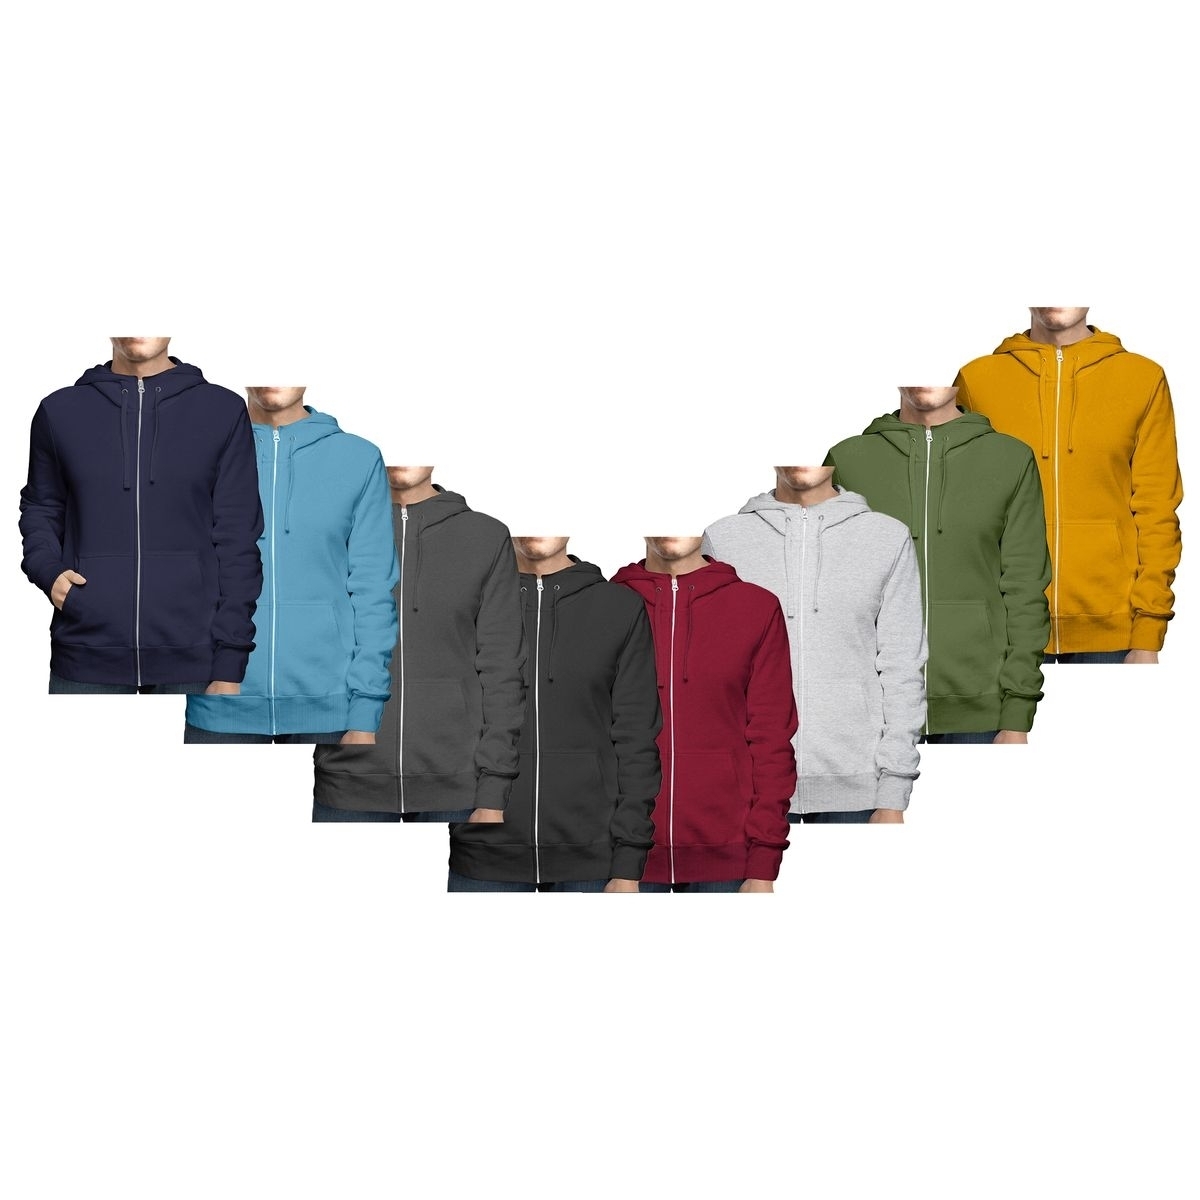 Men's Big & Tall Winter Warm Soft Cozy Full Zip-Up Fleece Lined Hoodie Sweatshirt - Charcoal, Medium